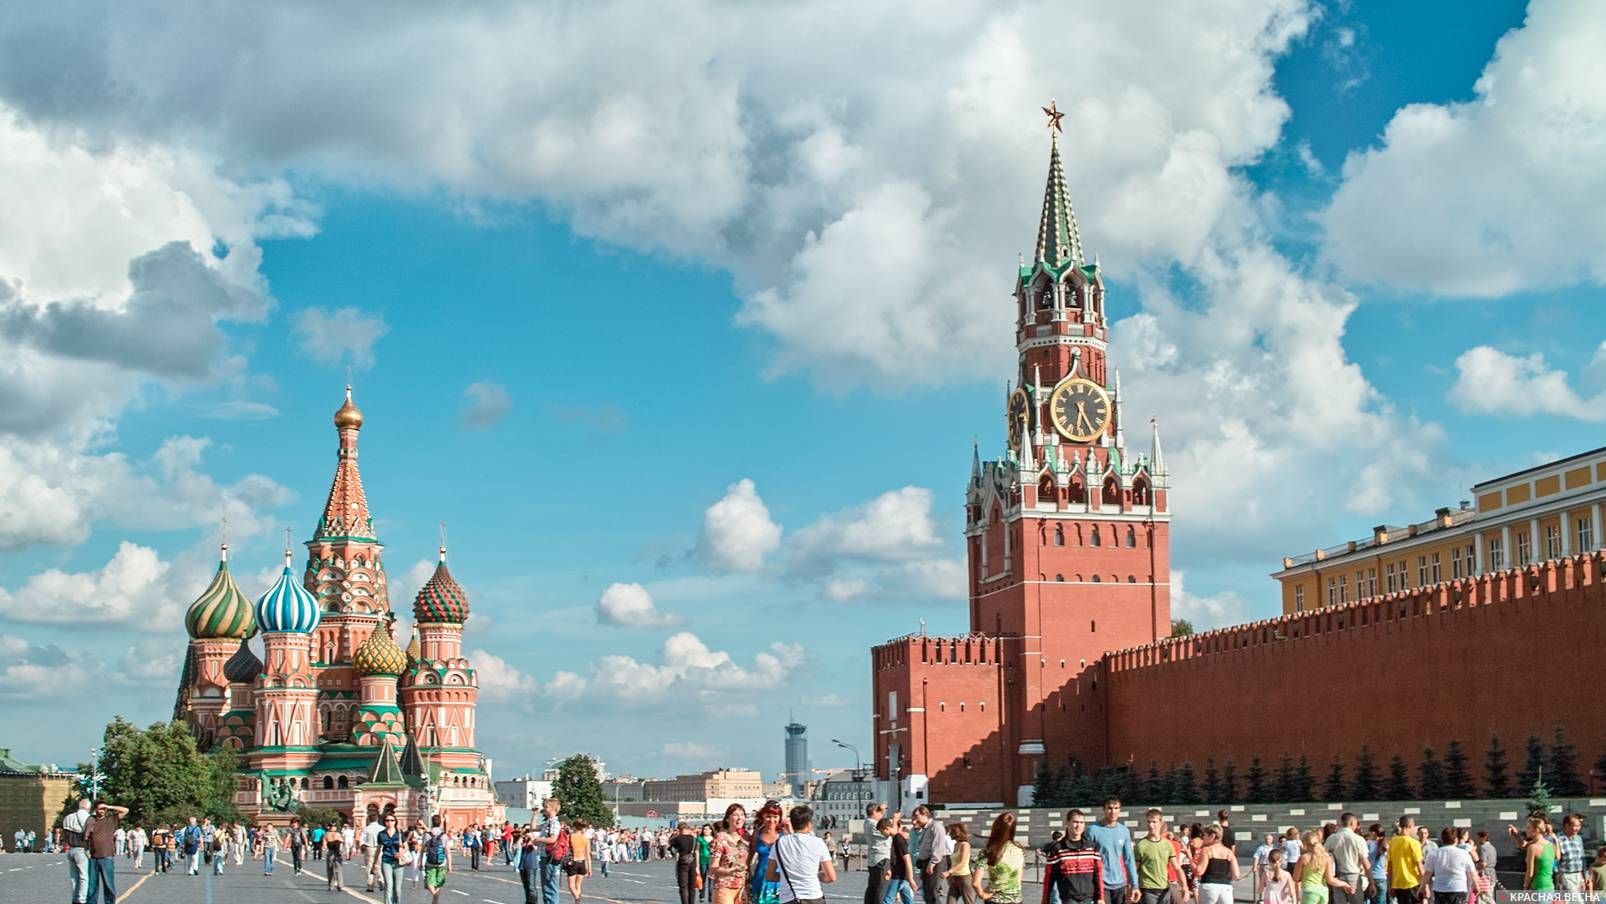 Krok Washingtonu smerom k Moskve. Je Kremeľ pripravený na mier?